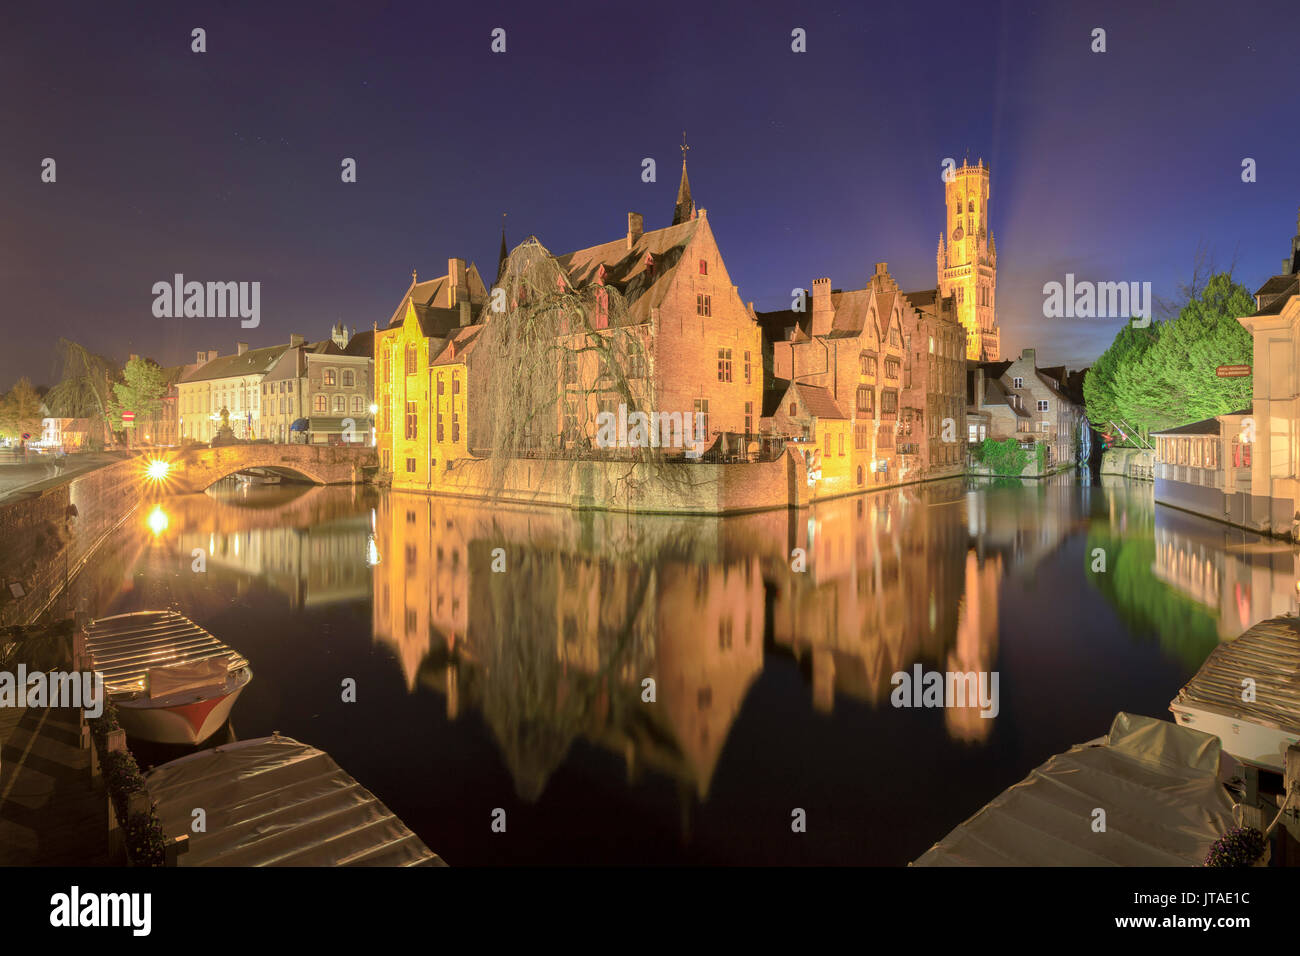 Il centro medievale della città, sito Patrimonio Mondiale dell'UNESCO, incorniciato da Rozenhoedkaai canal di notte, Bruges, Fiandre Occidentali, Belgio, Europa Foto Stock